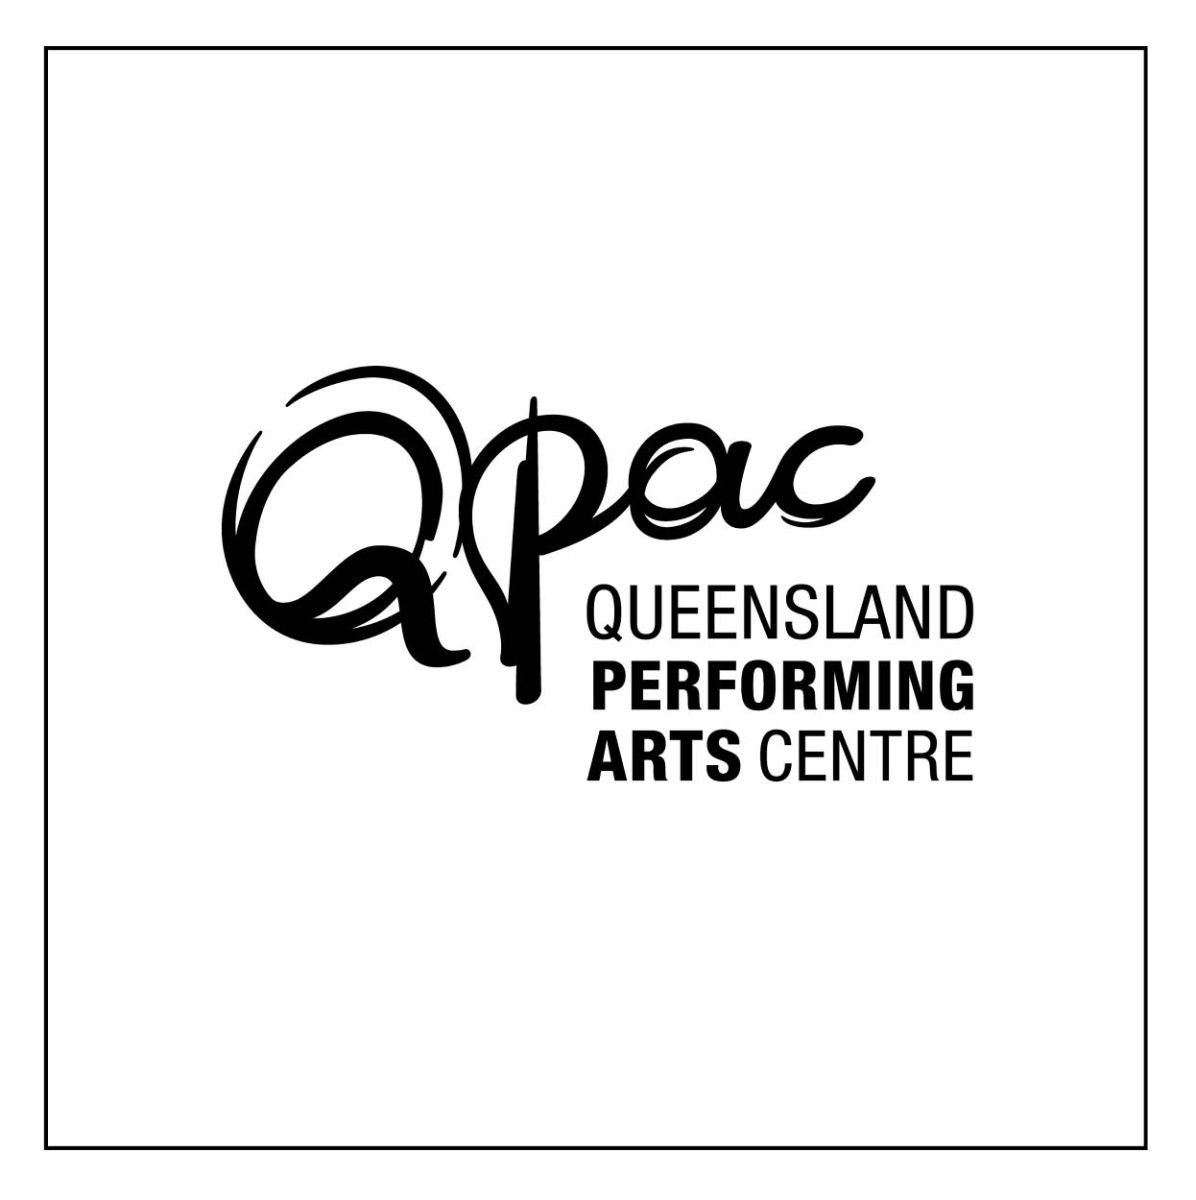 QPAC Queensland Performing Arts Centre